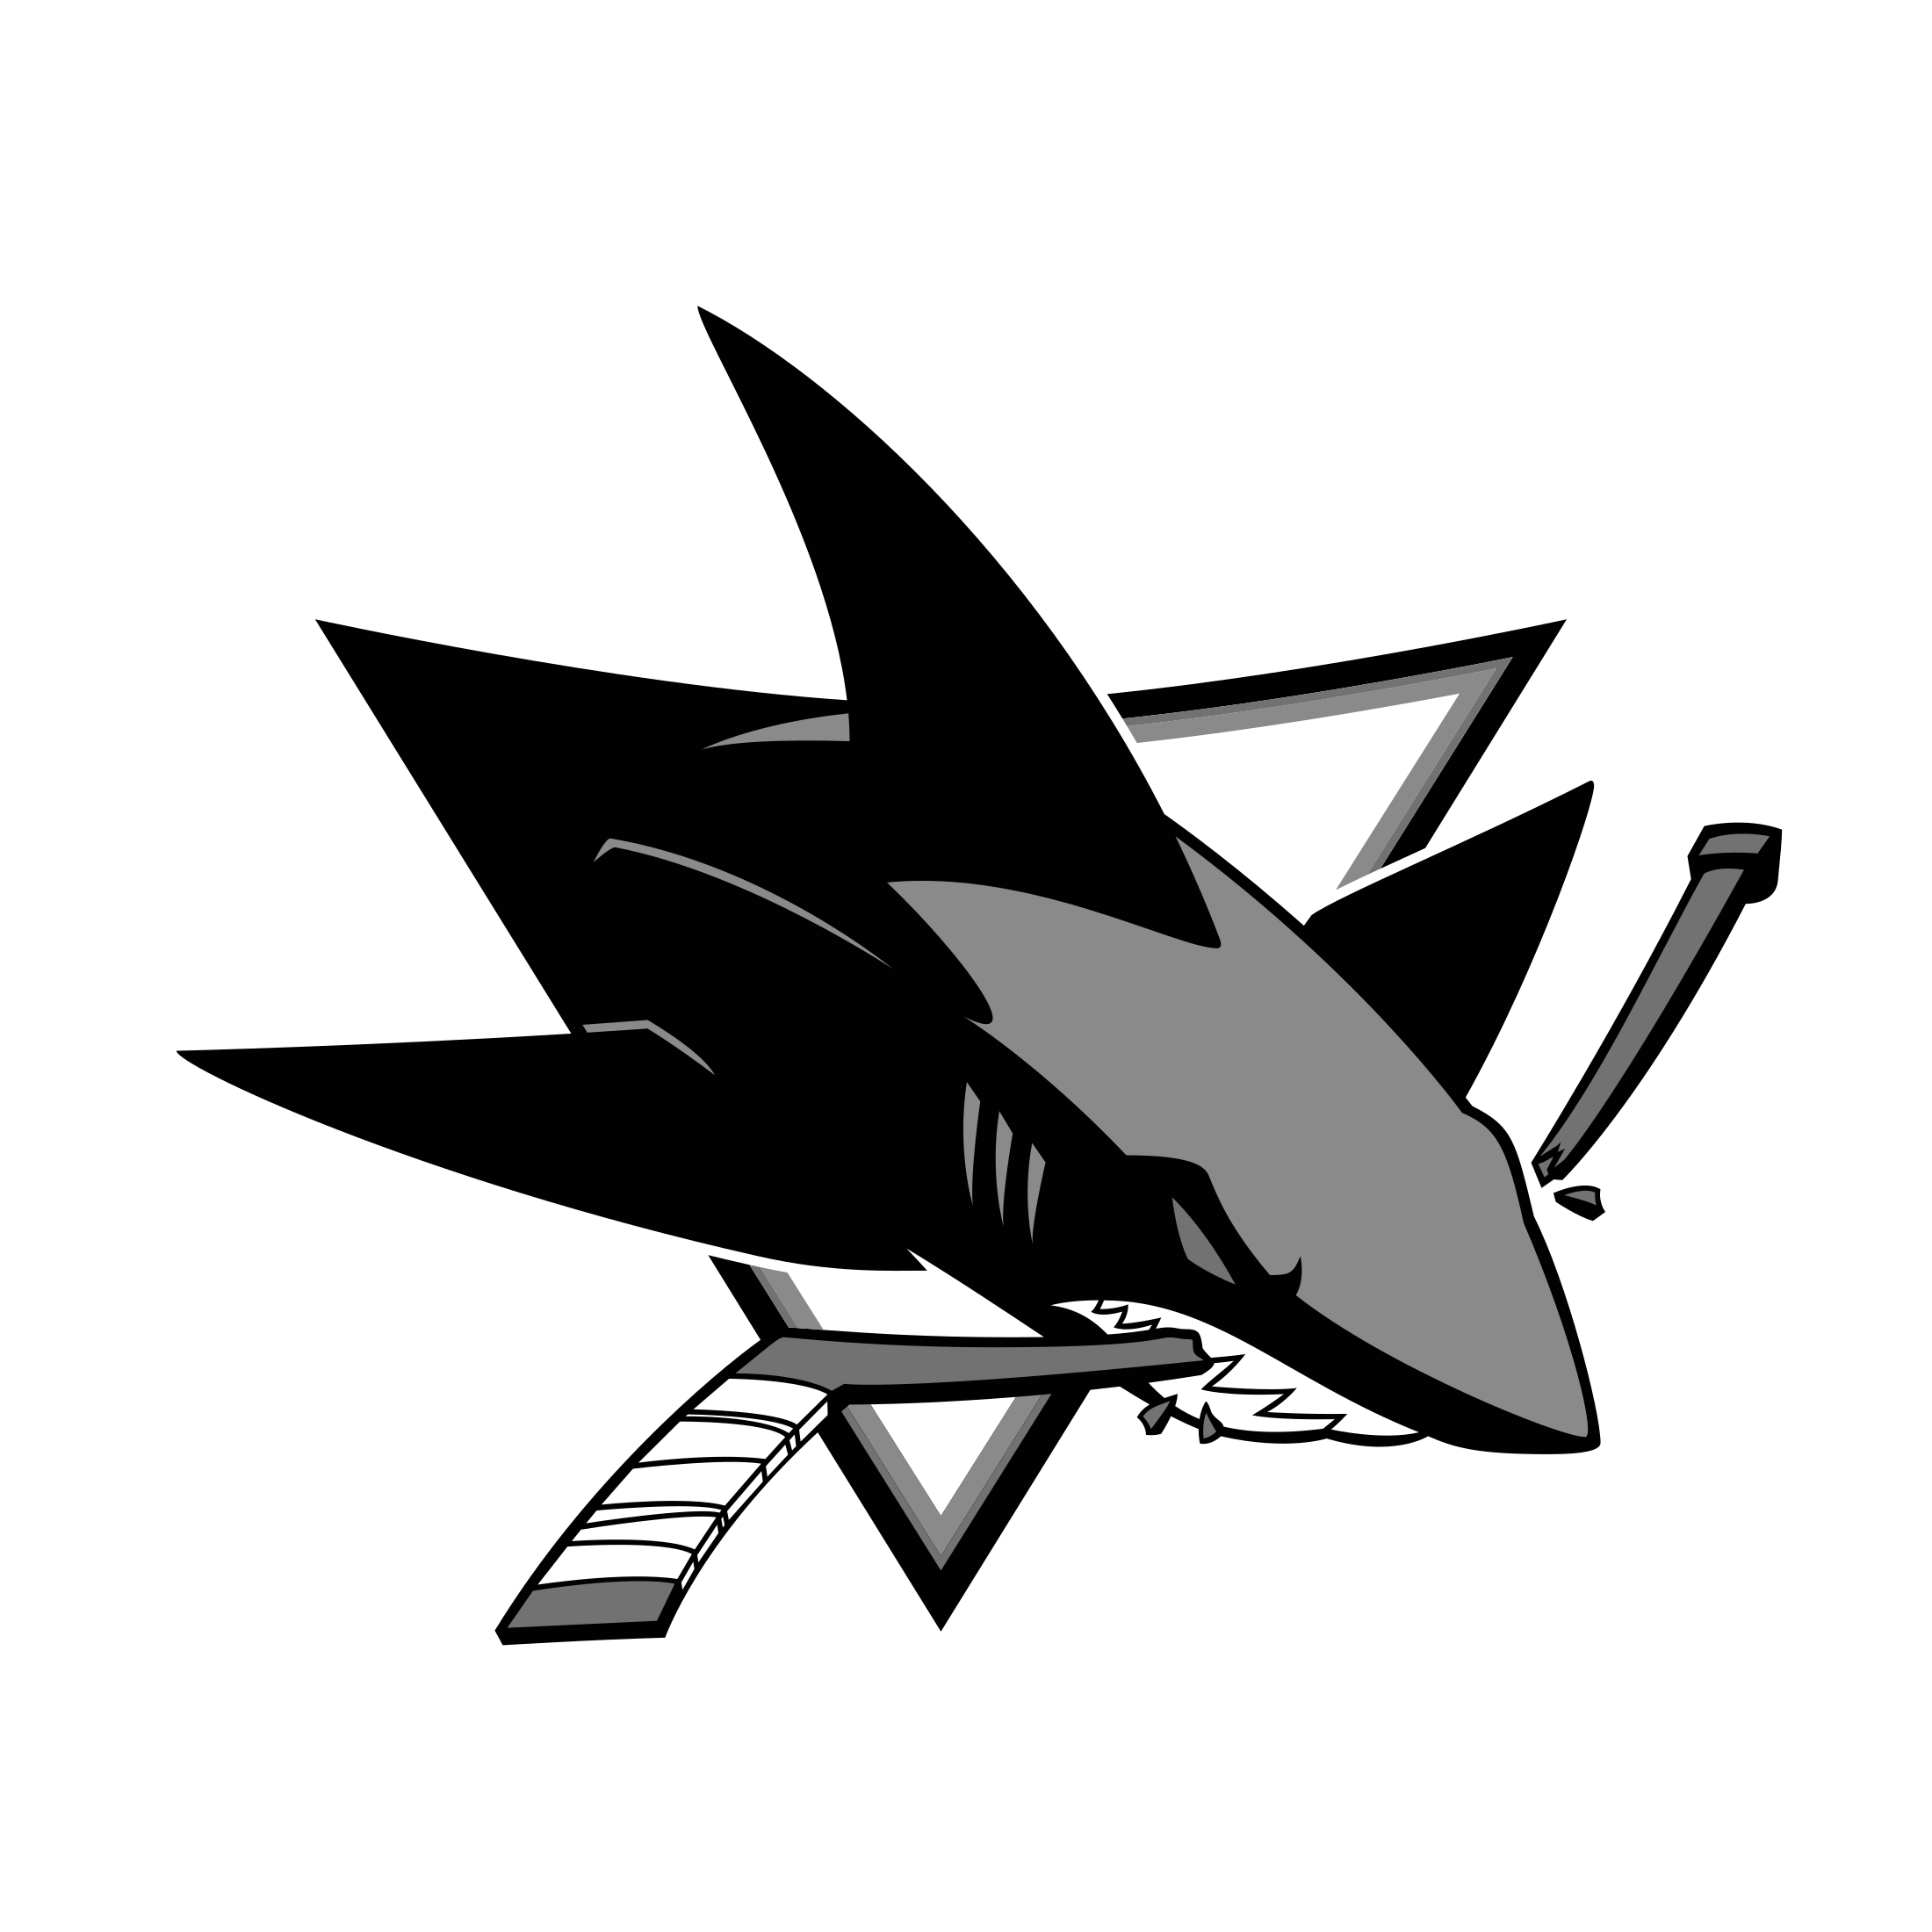 San Jose Sharks Logo Vector at Collection of San Jose